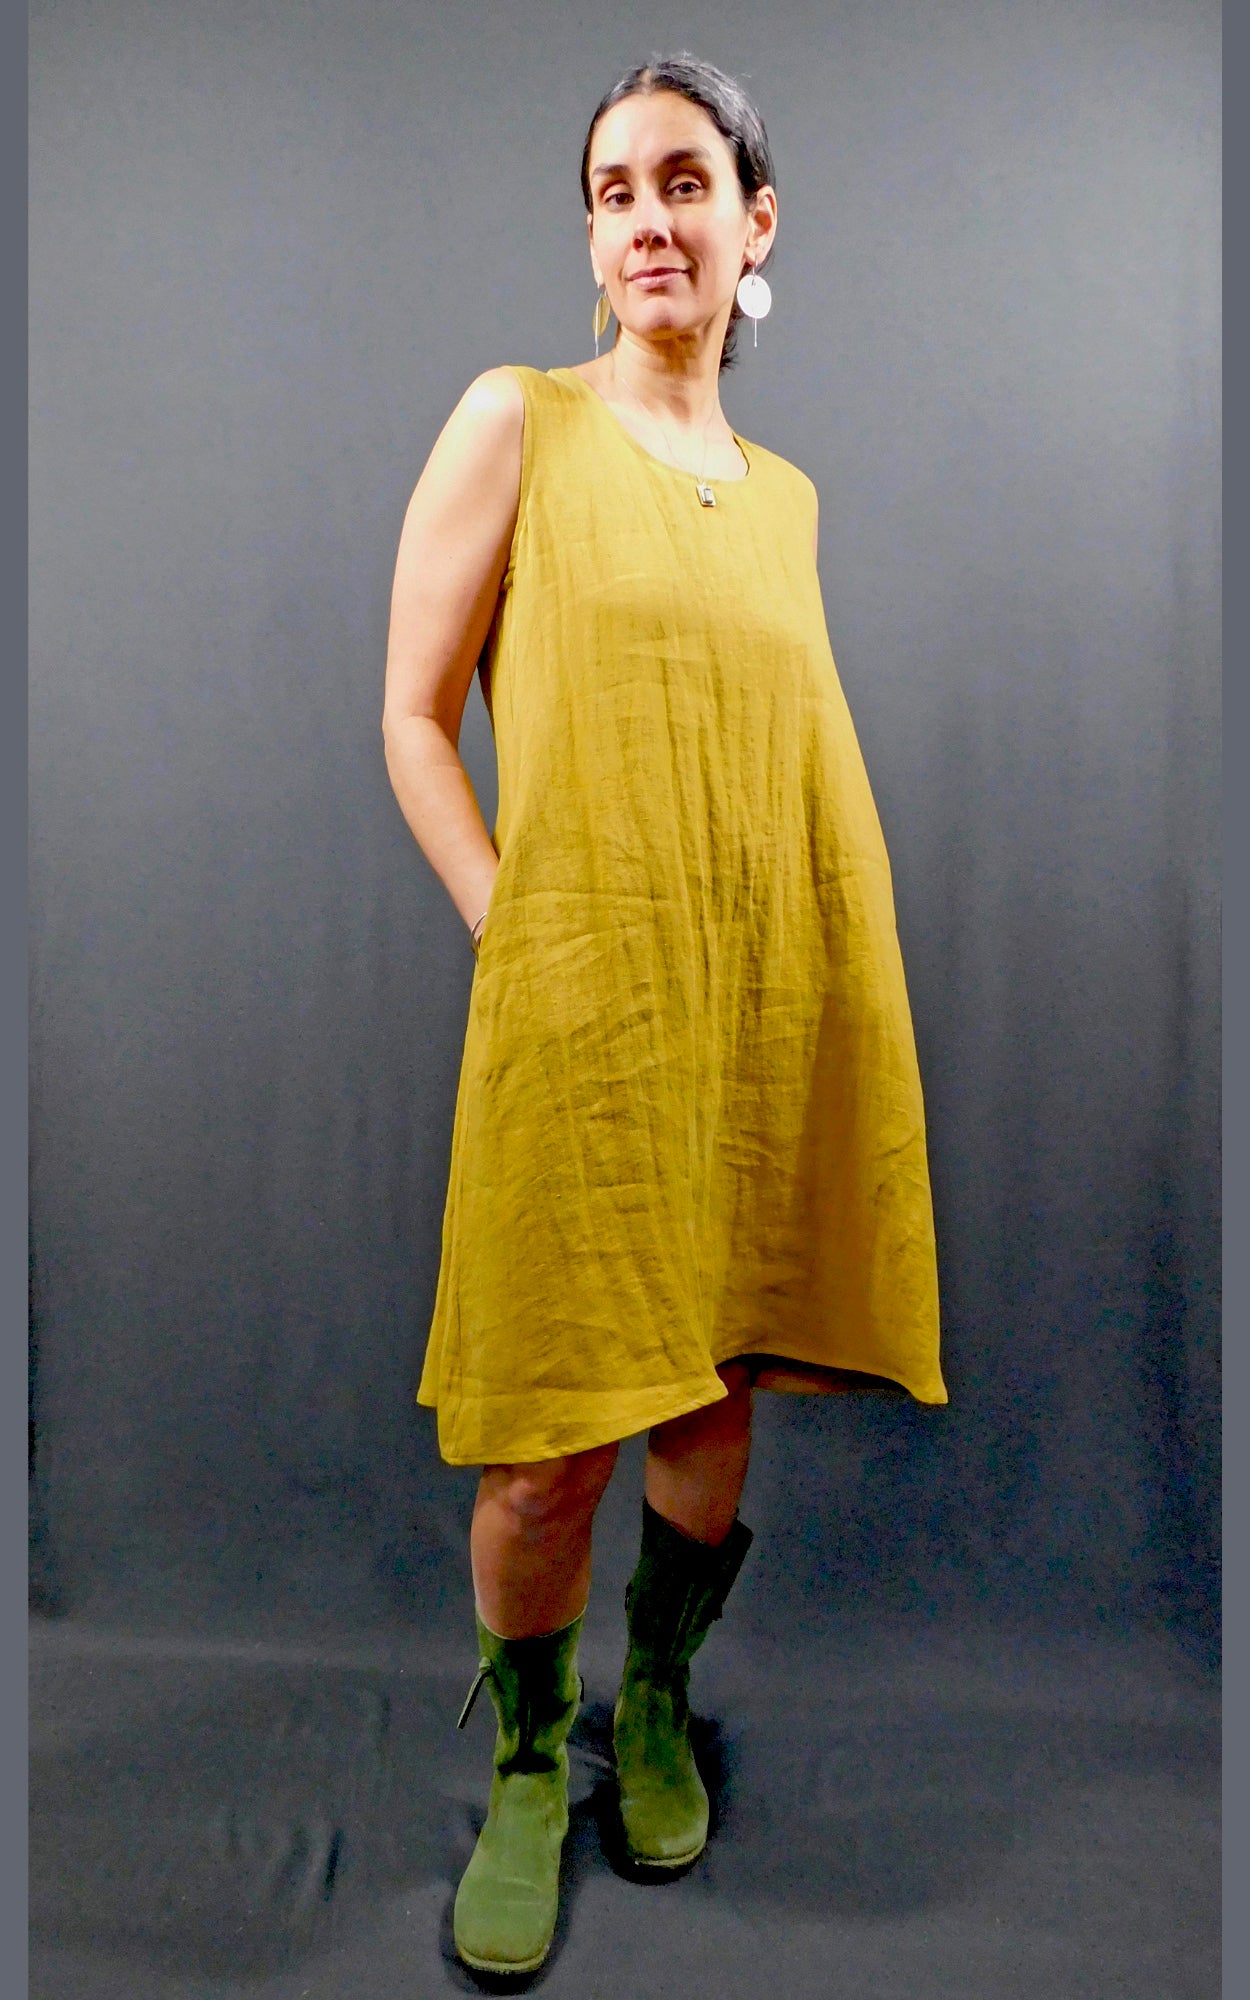 Printed 100% Linen Elegant Dresses For Women Sexy Sleeveless